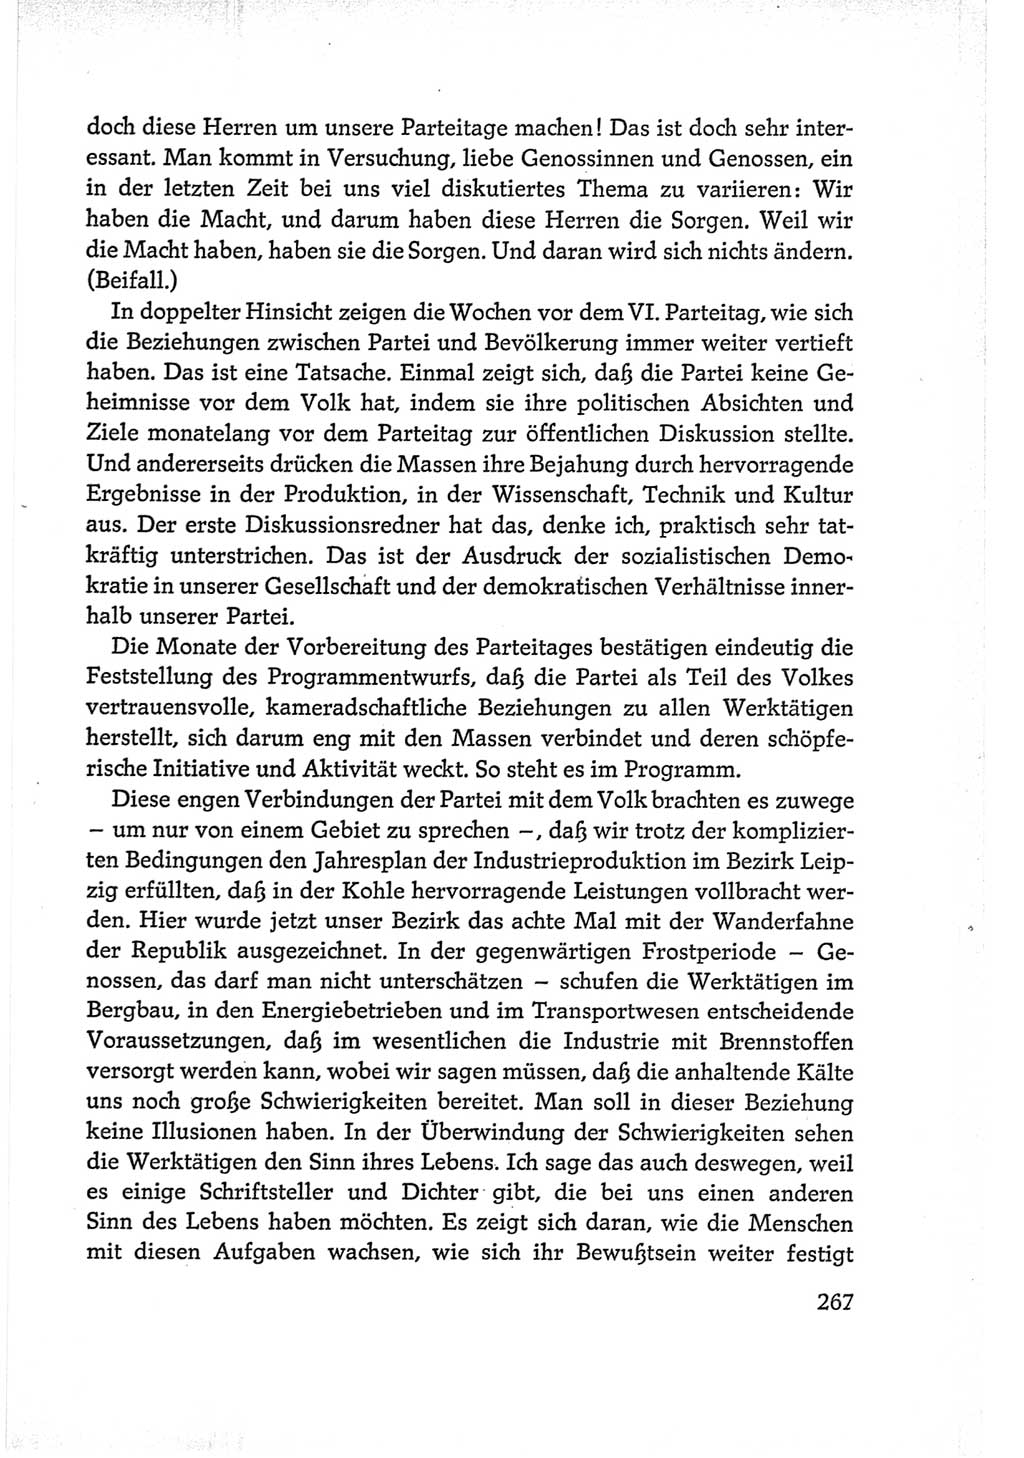 Protokoll der Verhandlungen des Ⅵ. Parteitages der Sozialistischen Einheitspartei Deutschlands (SED) [Deutsche Demokratische Republik (DDR)] 1963, Band Ⅰ, Seite 267 (Prot. Verh. Ⅵ. PT SED DDR 1963, Bd. Ⅰ, S. 267)